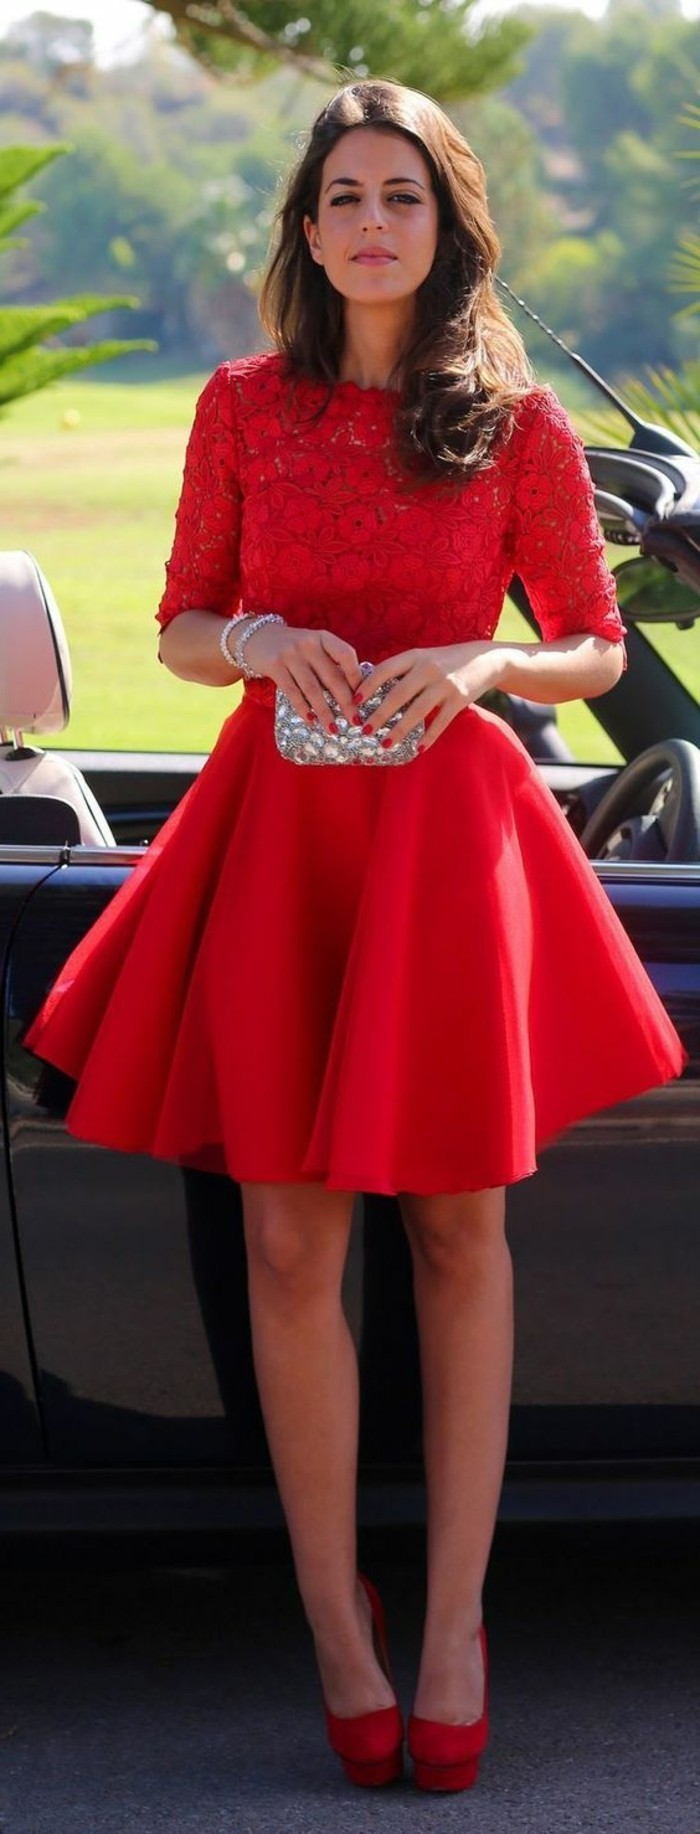 εορταστική φορέματα-short-κόκκινο-φόρεμα-με-δαντέλα σγουρά μαλλιά σκούρο καφέ - ασημί-τσέπη-auto